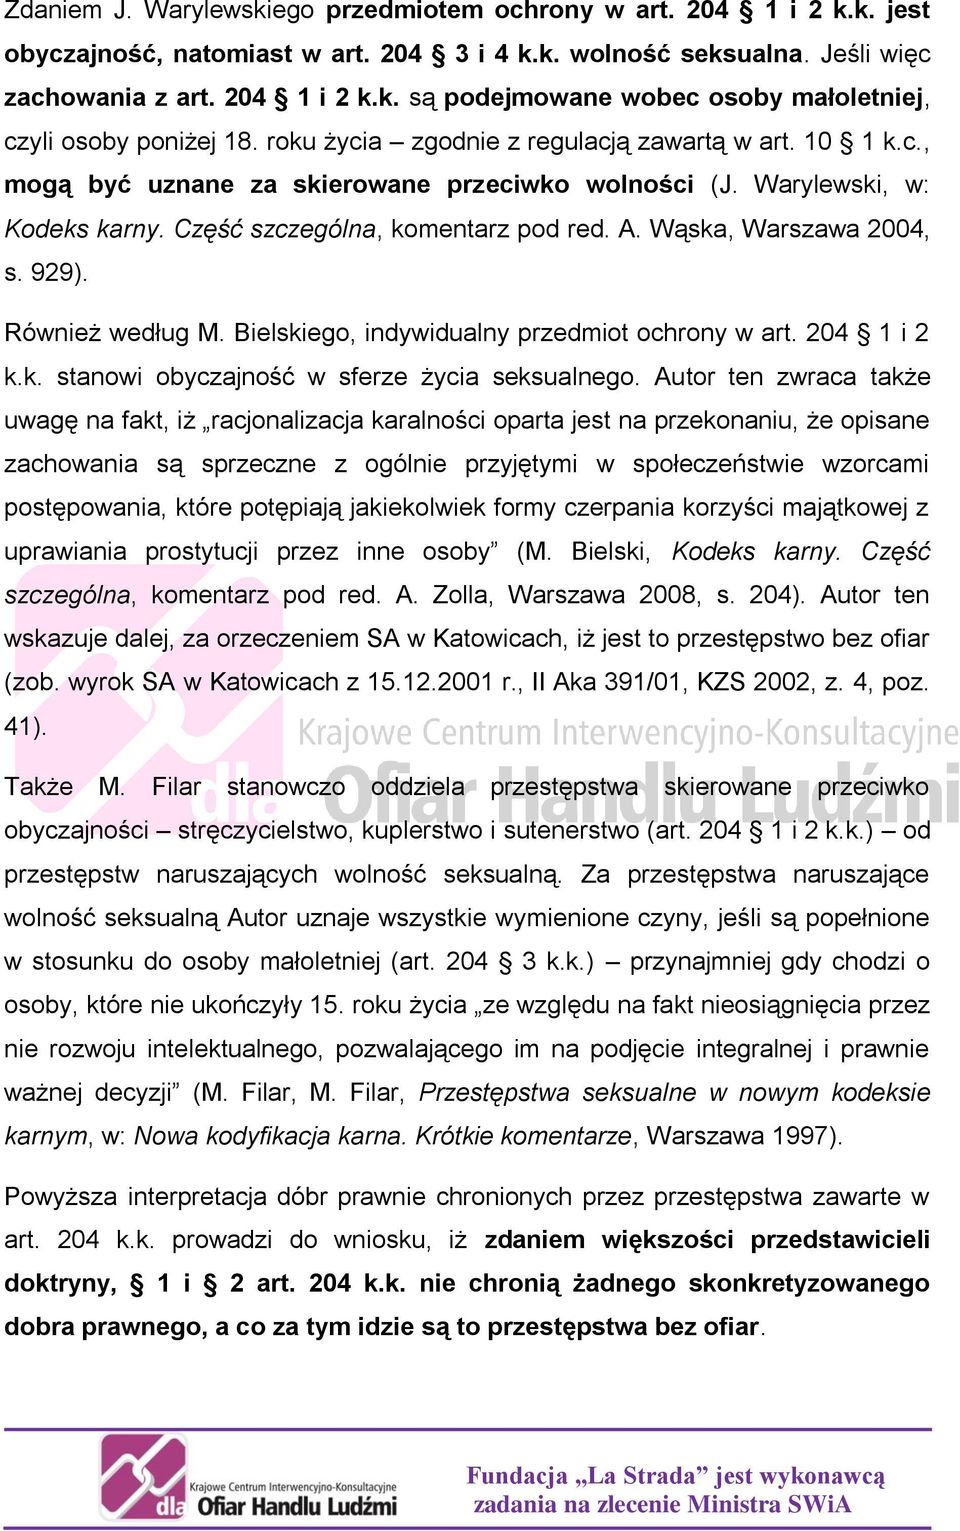 Wąska, Warszawa 2004, s. 929). Również według M. Bielskiego, indywidualny przedmiot ochrony w art. 204 1 i 2 k.k. stanowi obyczajność w sferze życia seksualnego.